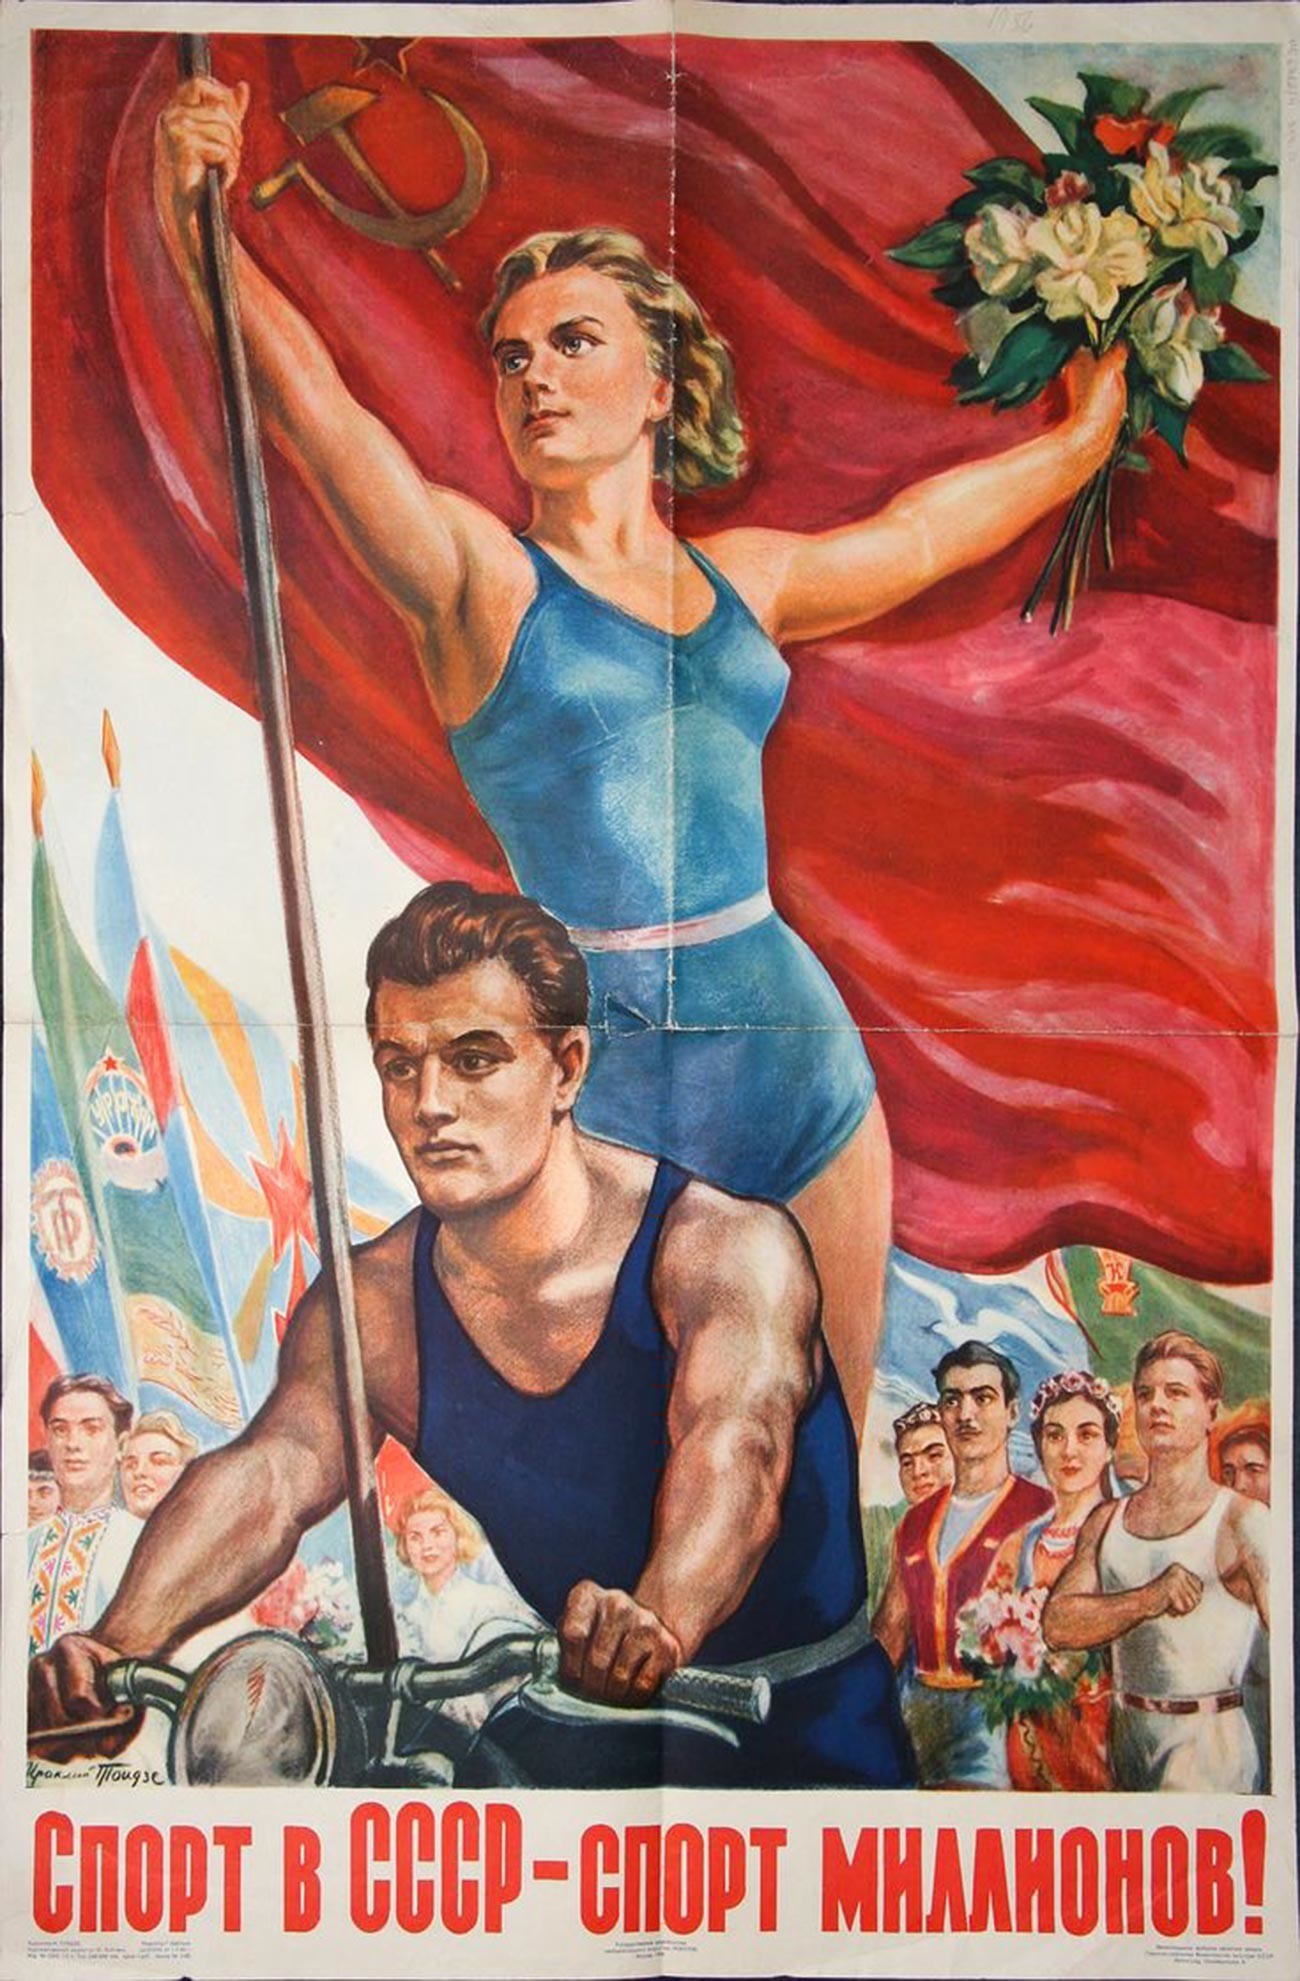 Le sport en URSS - le sport de millions!
